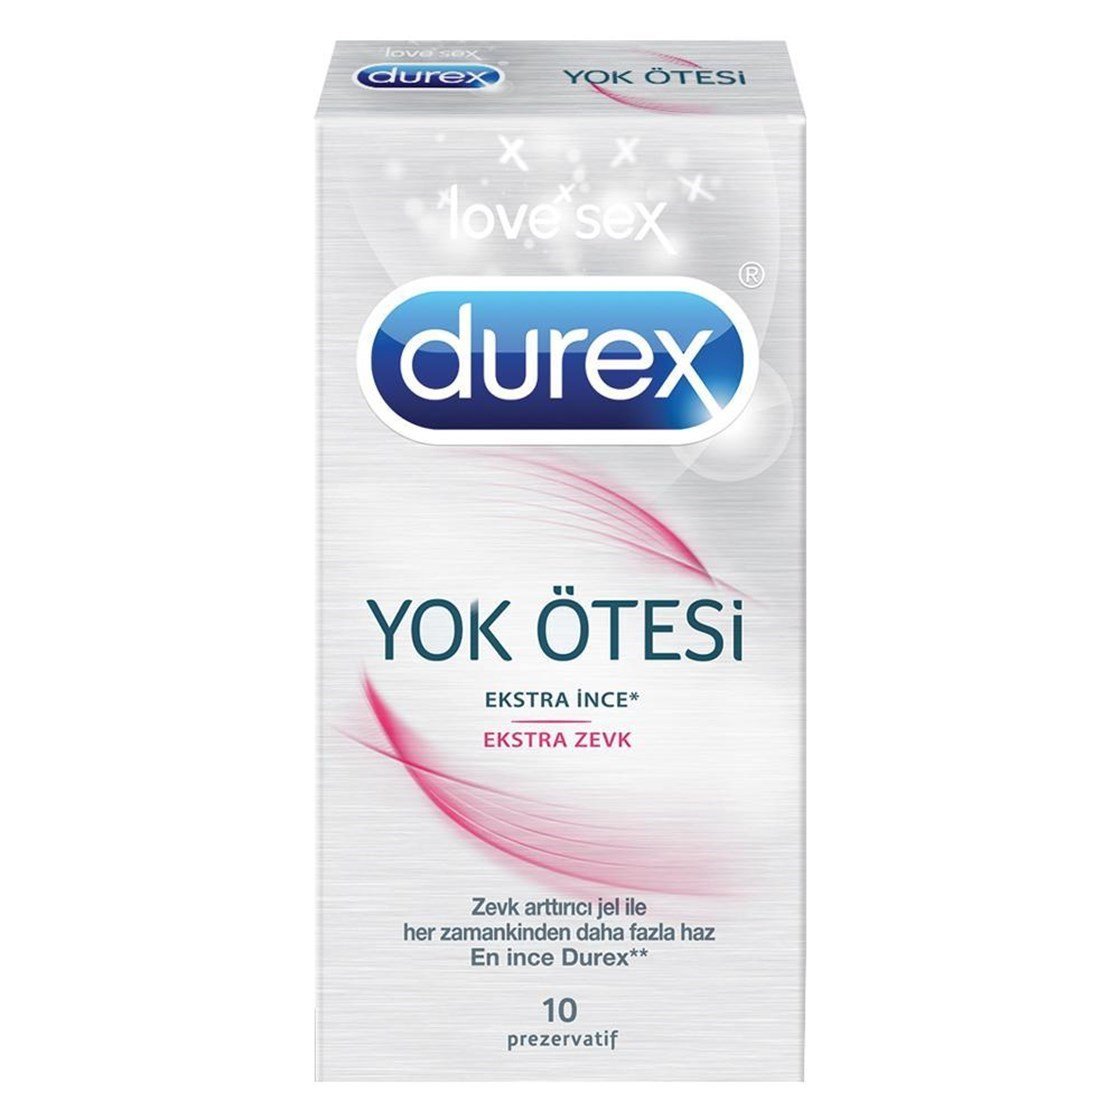 Durex Yok Ötesi Ekstra Zevk 10'lu Prezervatif Ürün ve Fiyatları İndirimli |  Dermoailem.com